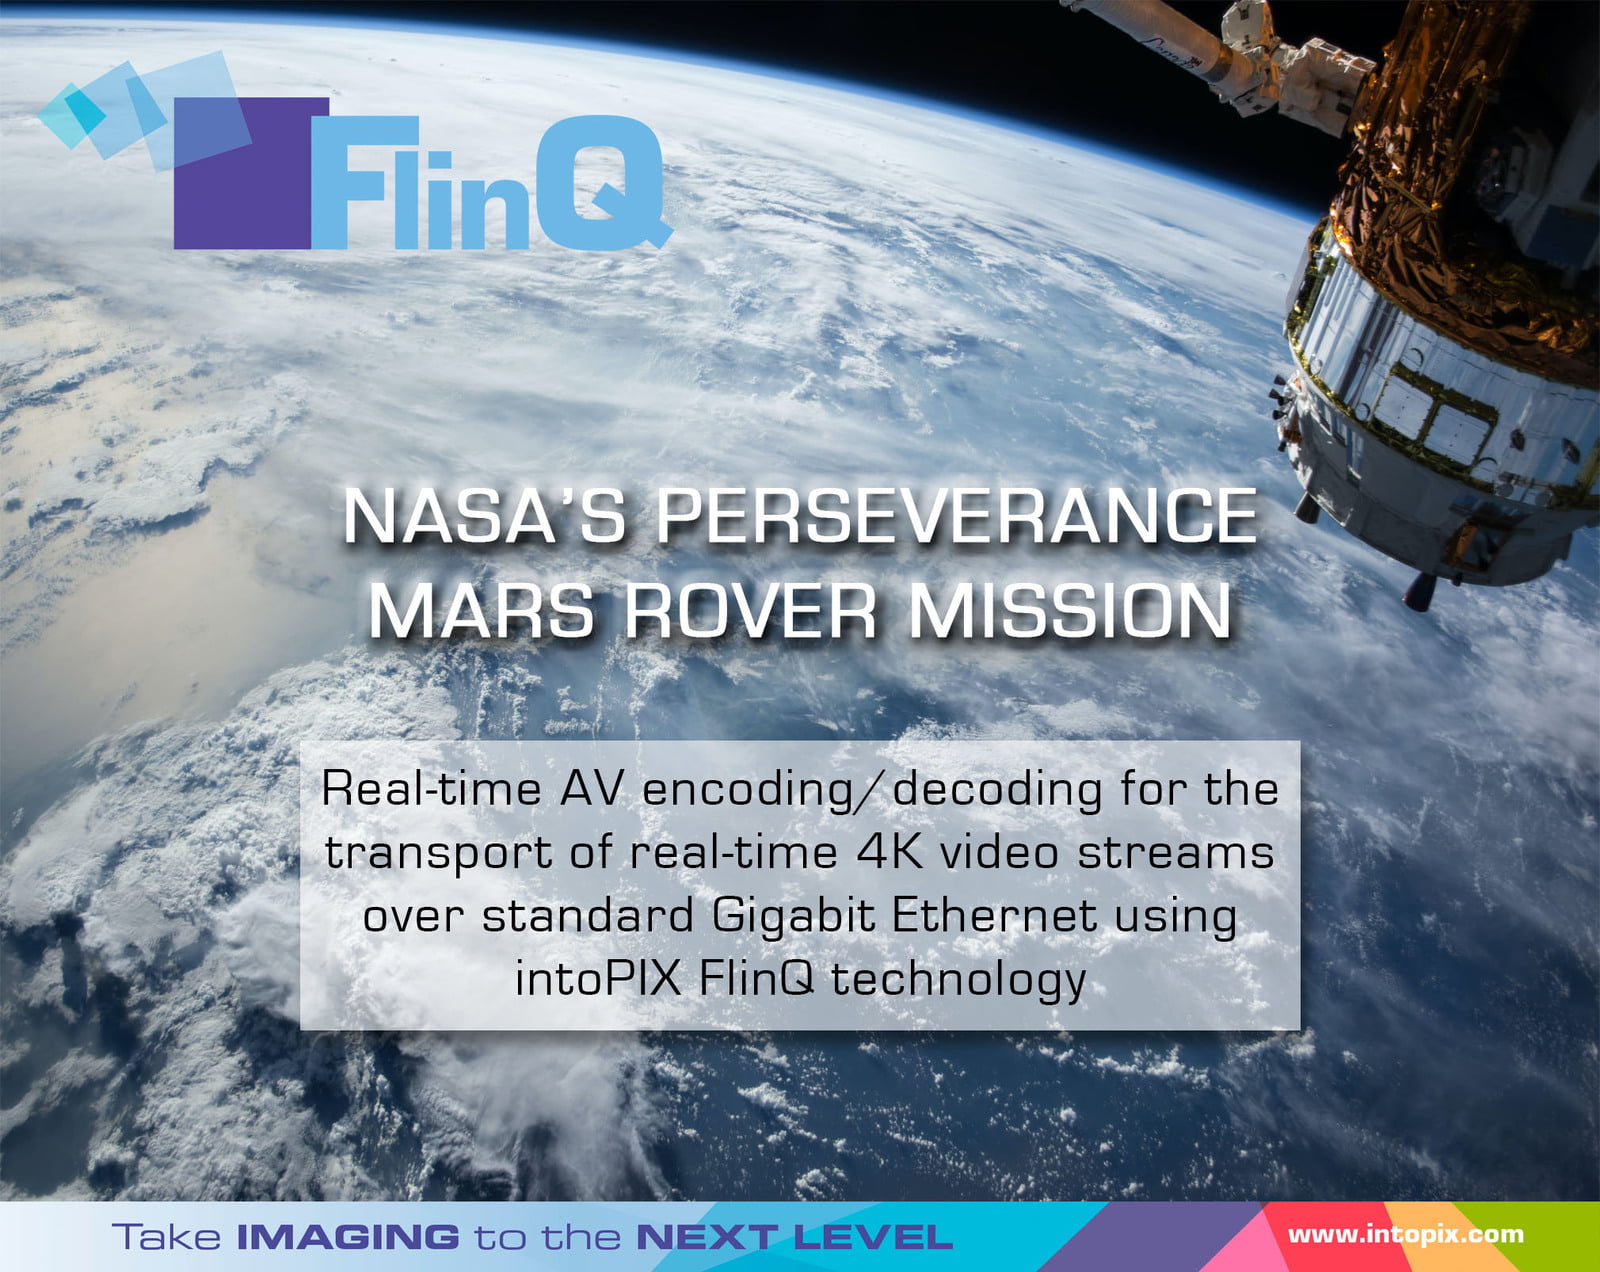 intoPIX FlinQ 快思聰DM NVX中嵌入的技術為NASA服務 